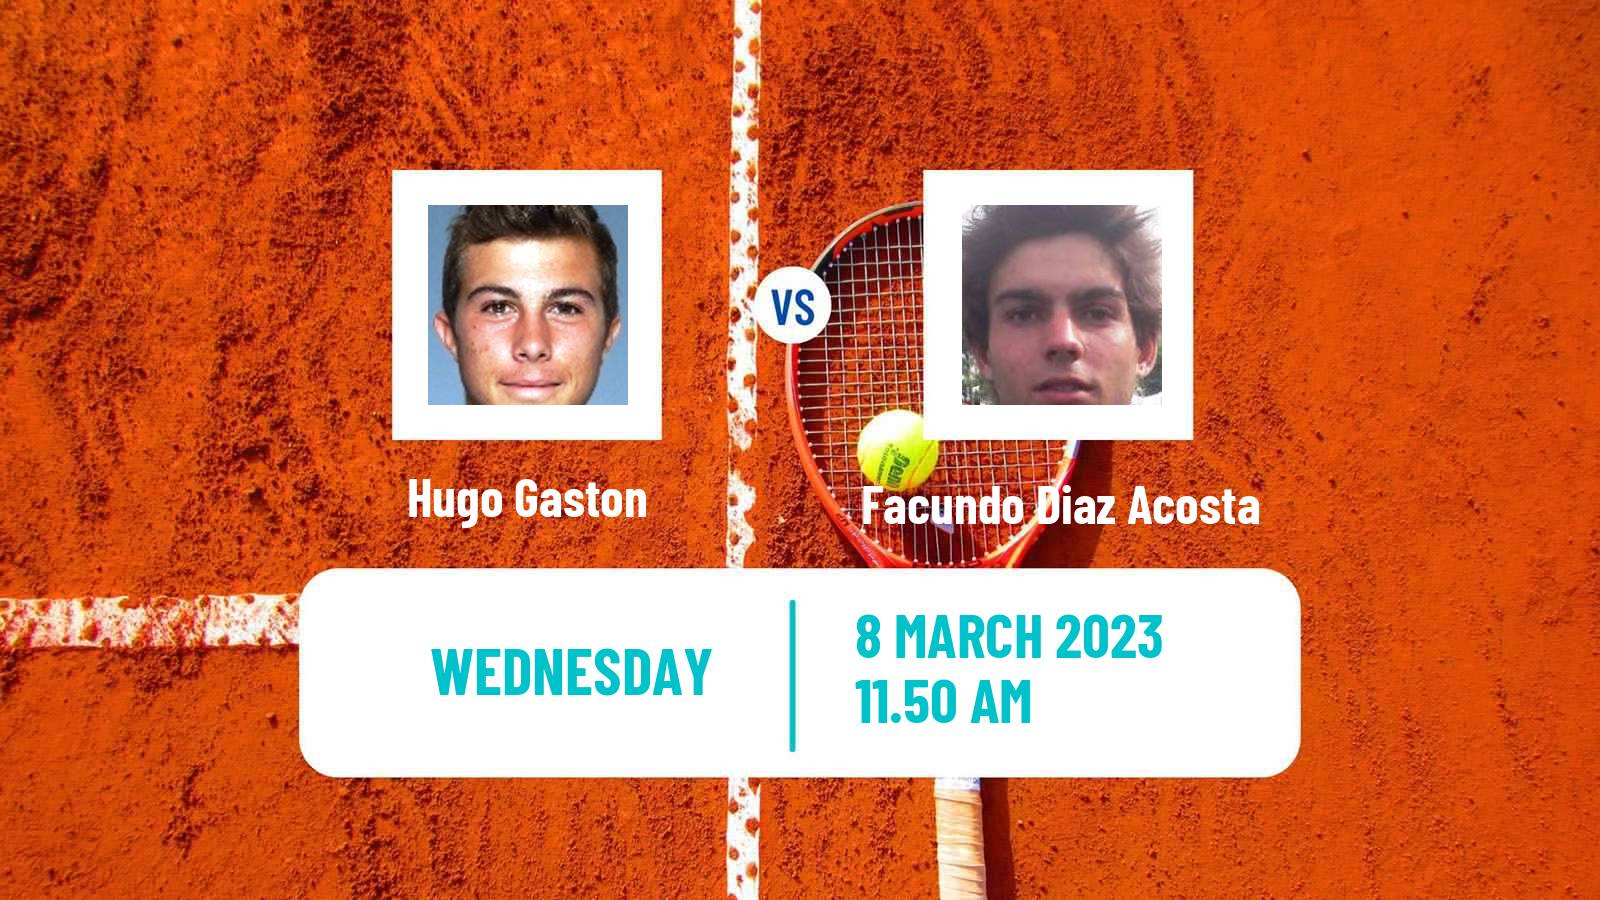 Tennis ATP Challenger Hugo Gaston - Facundo Diaz Acosta